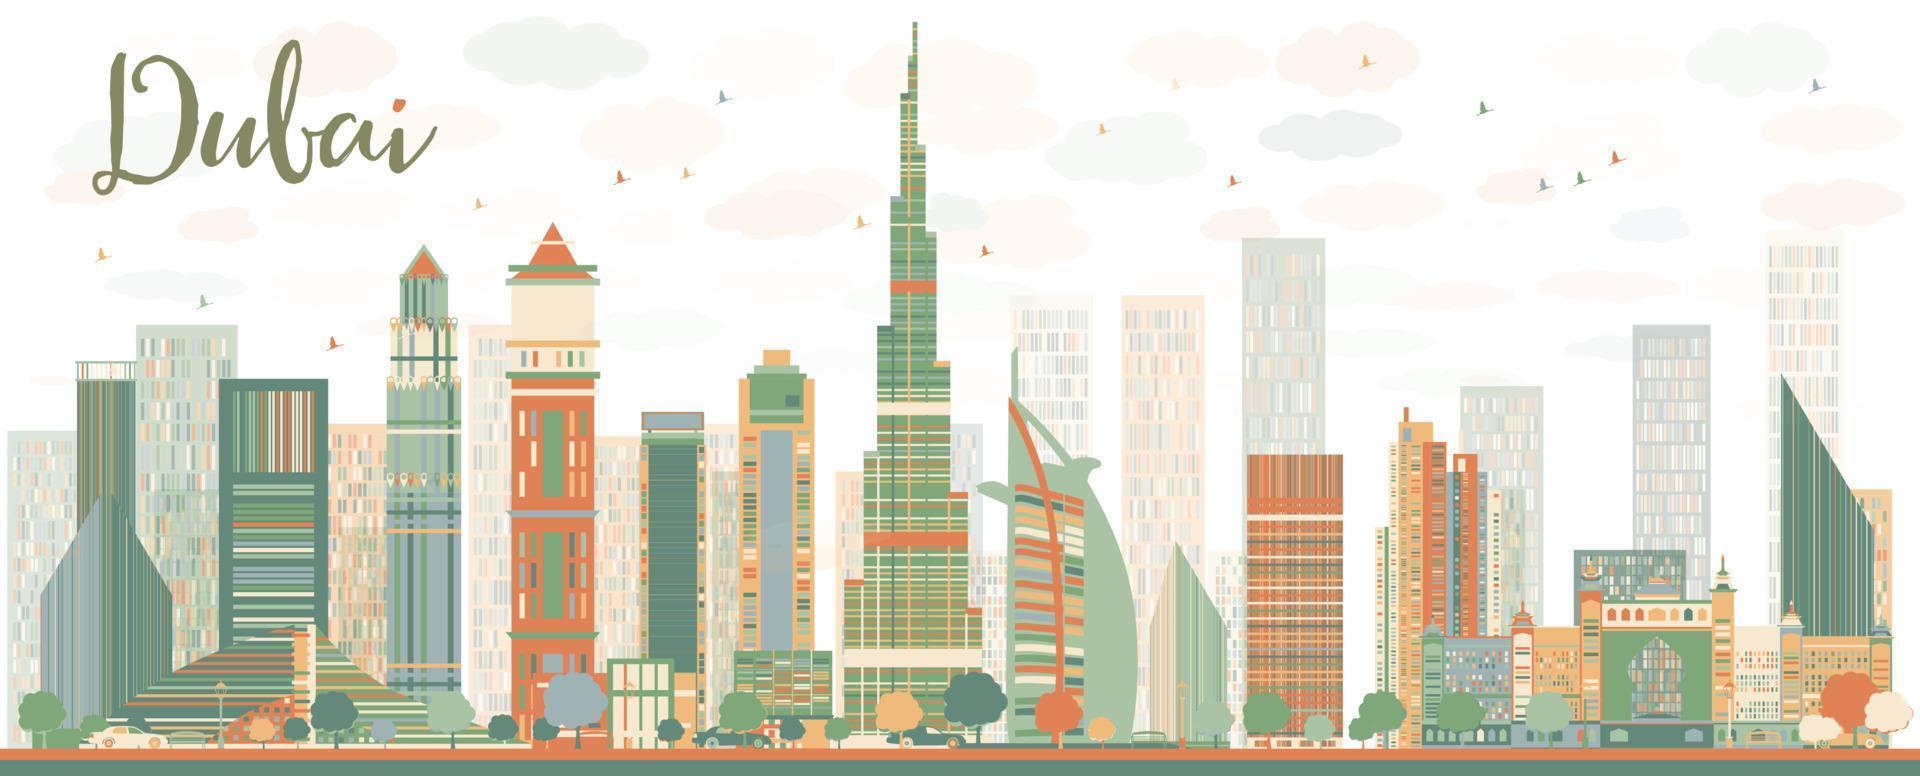 gratte-ciel abstrait de la ville de dubaï avec des gratte-ciel de couleur vecteur